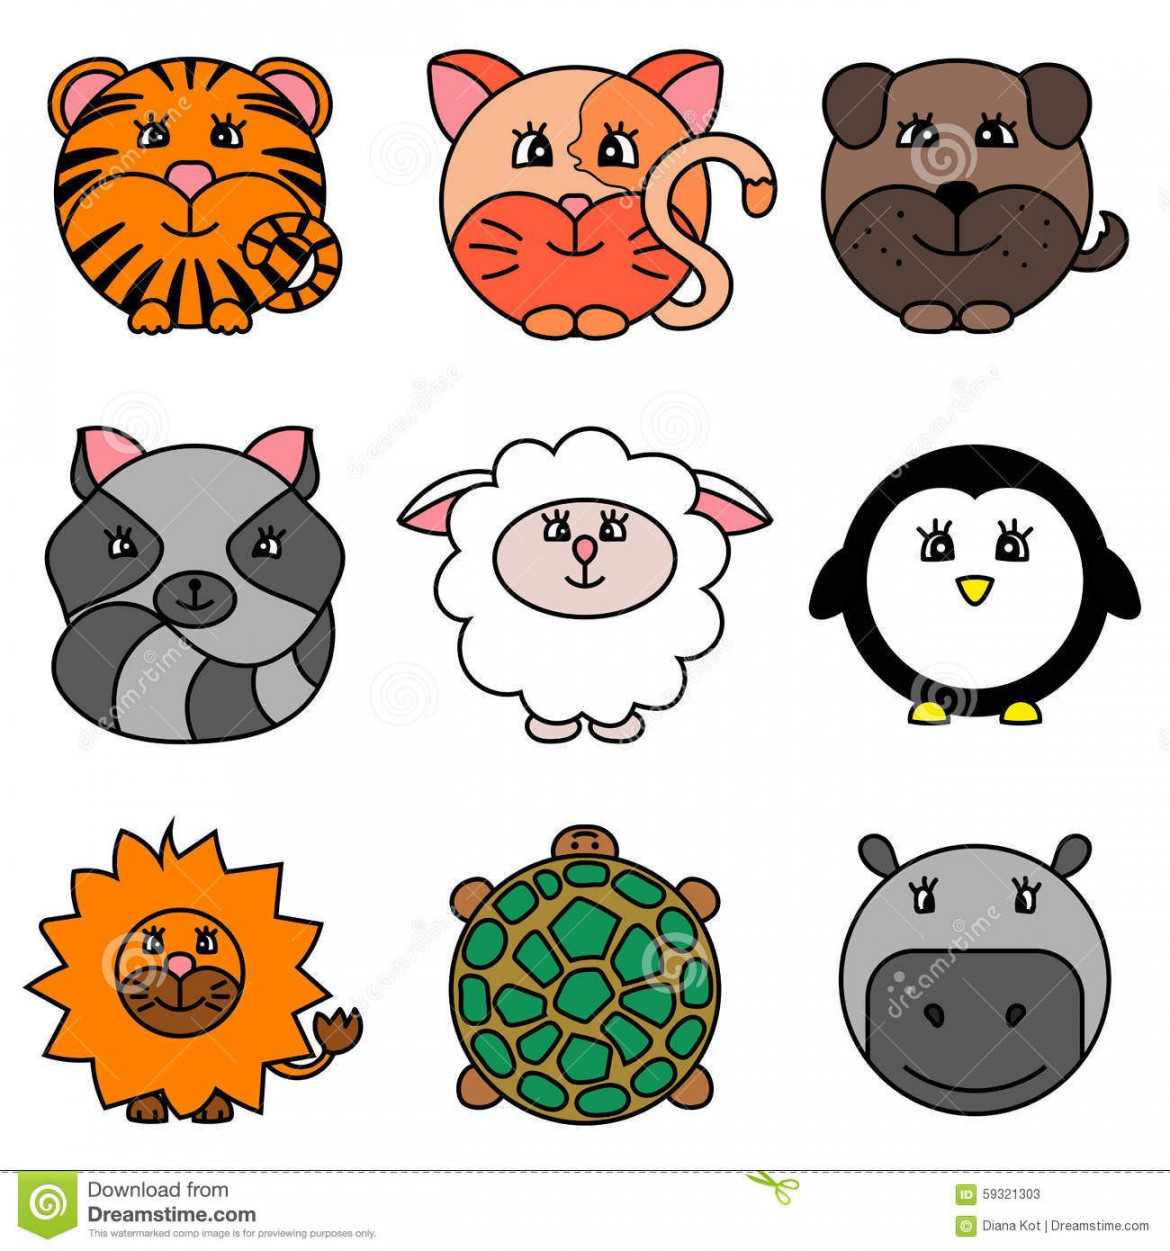 Adorable collection of cartoon circle animals